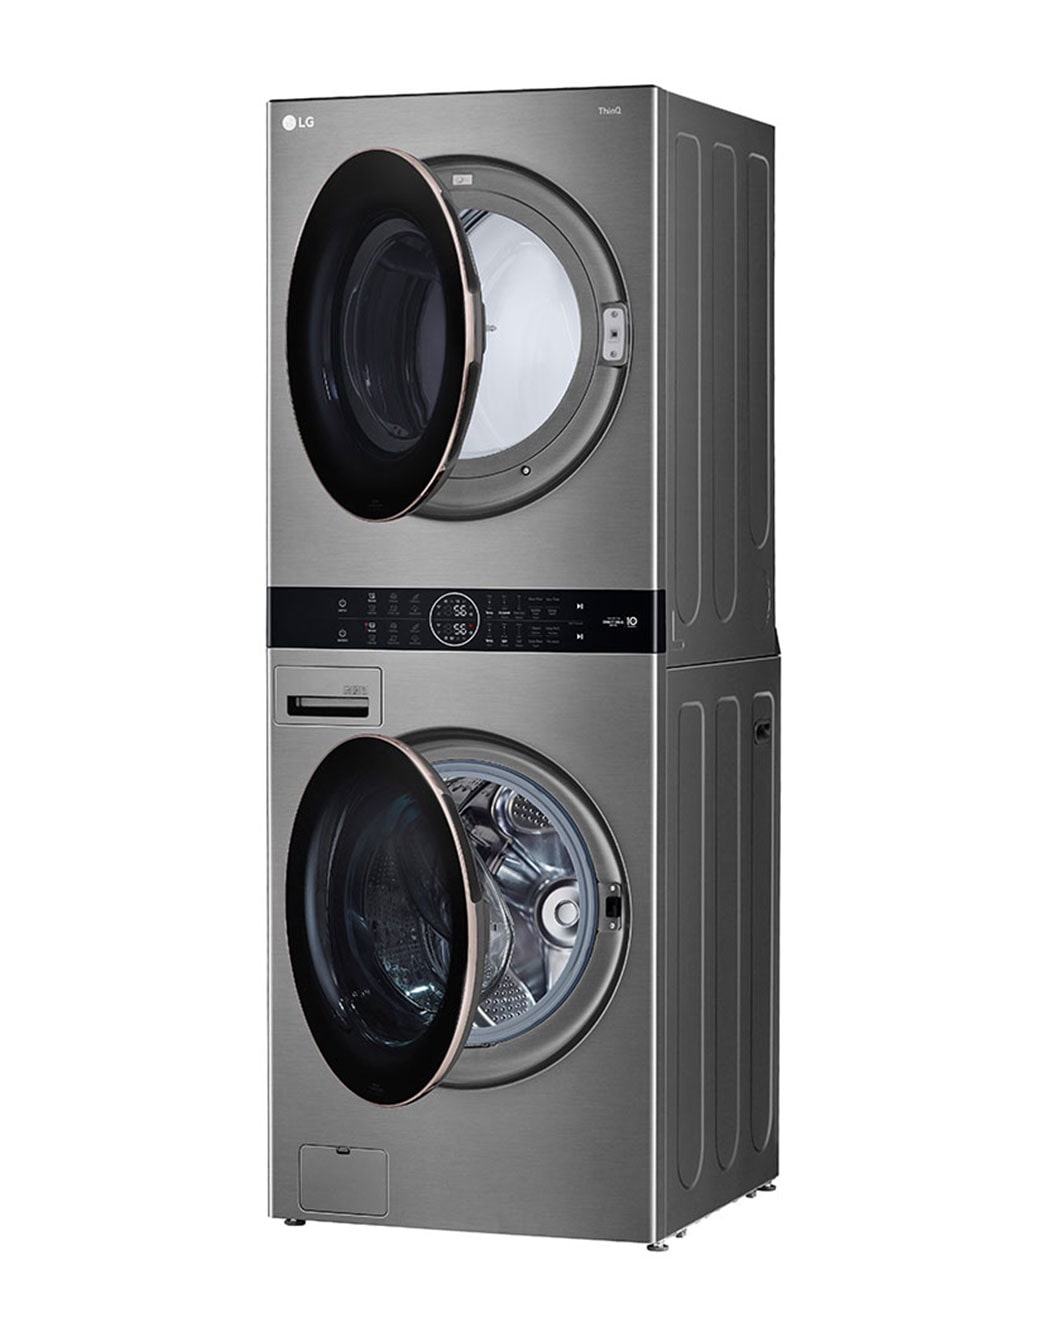 LG presenta WashTower, una nueva torre de lavado con secadora y